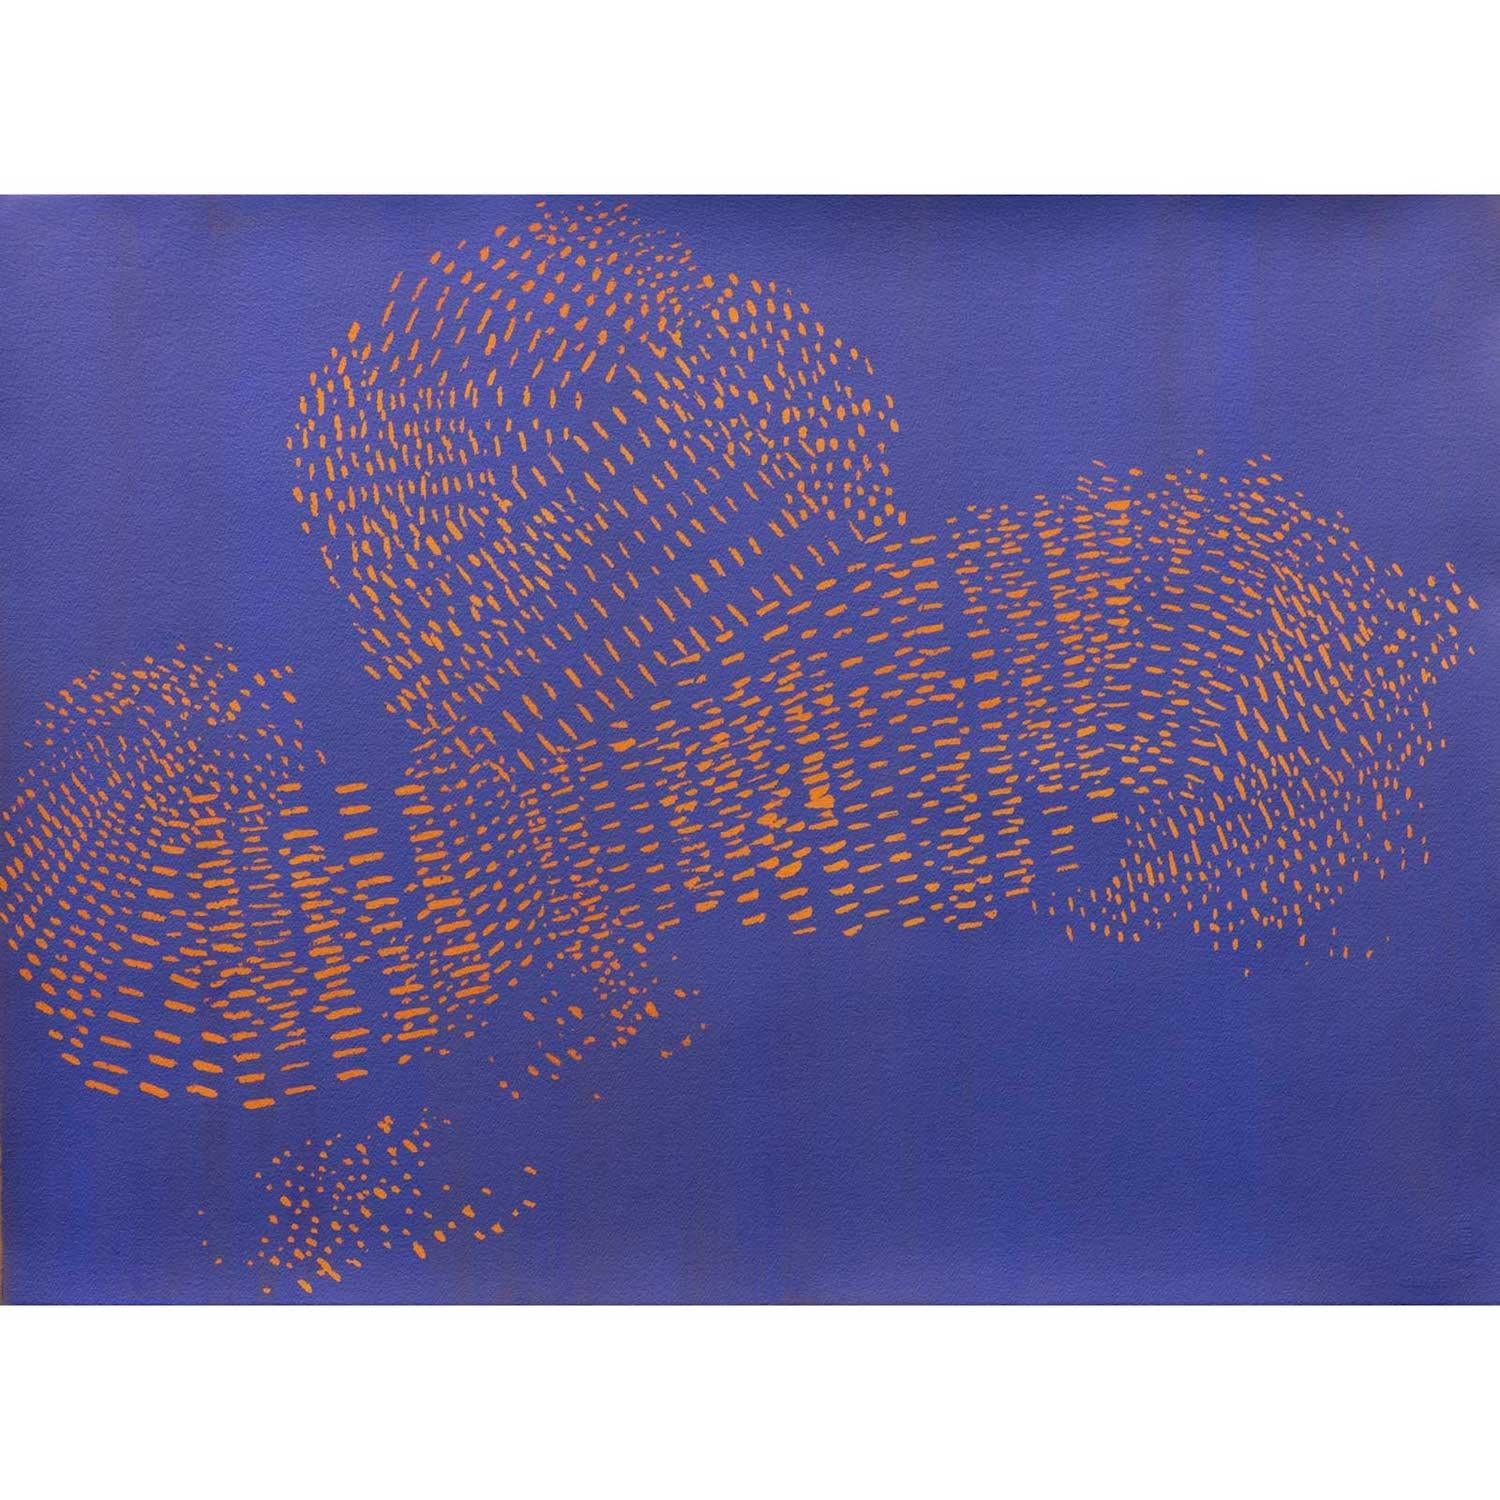 Starling Murmure, IV par Leigh Glover [2022]

original
Acrylique sur papier
Taille de l'image : H:56,5 cm x L:76,5 cm
Taille complète de l'œuvre non encadrée : H:56,5 cm x L:76,5 cm x P:moins de .1cm
Vendu sans cadre
Veuillez noter que les images